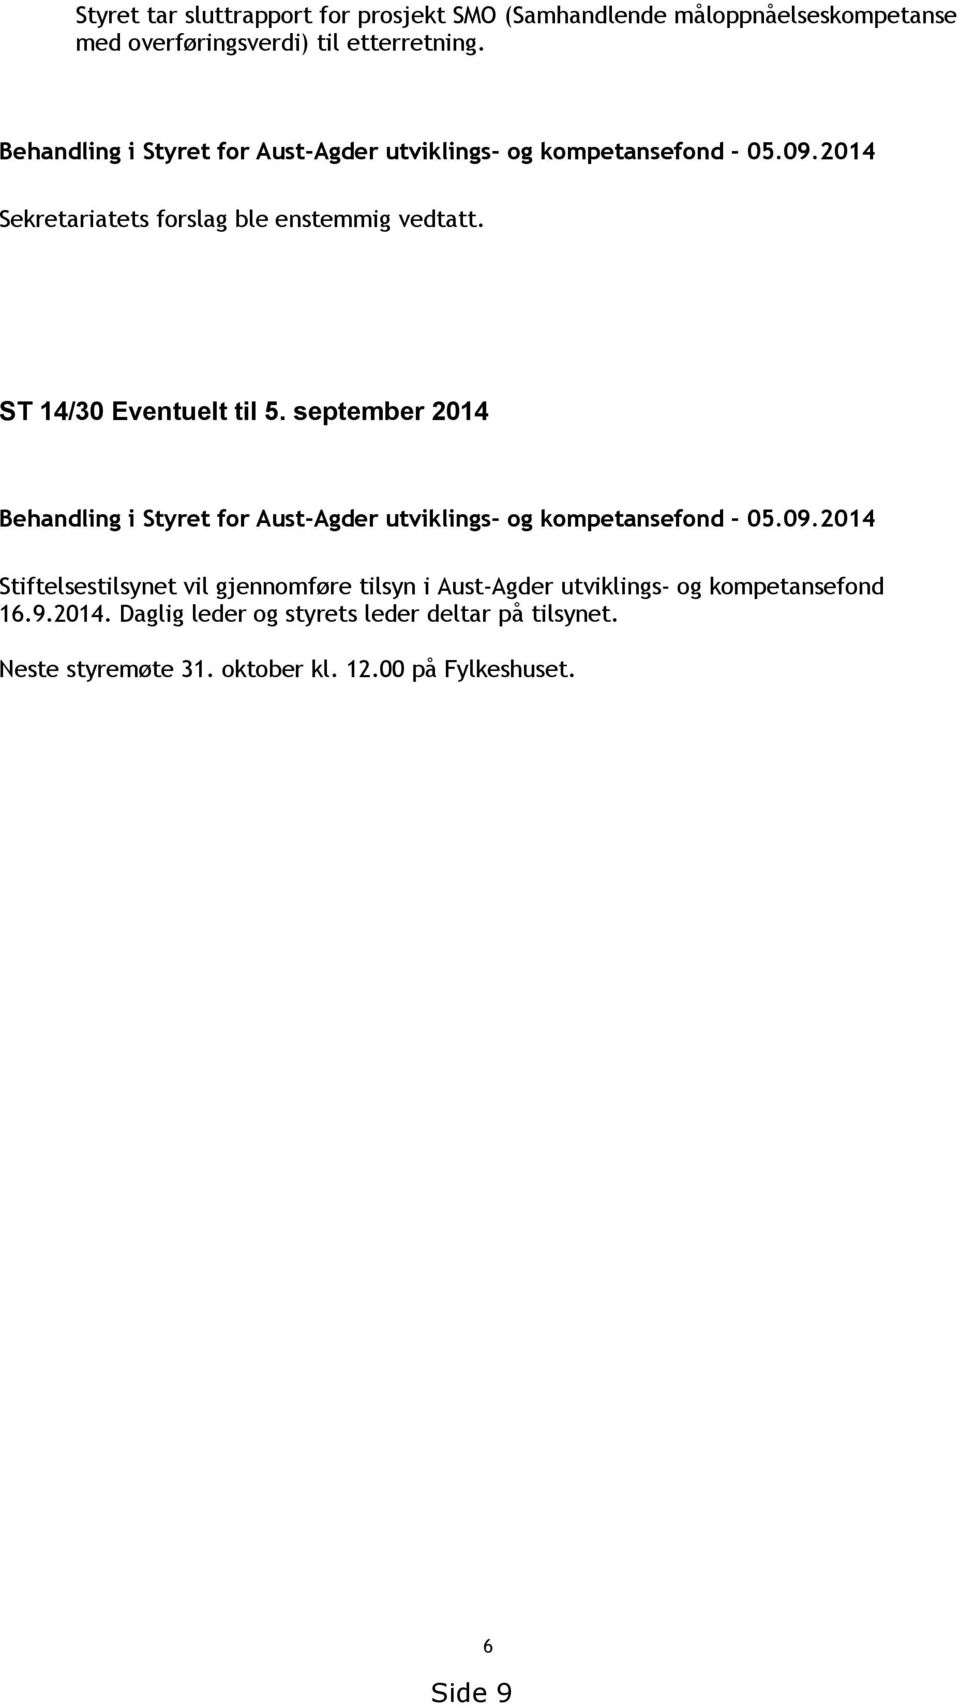 ST 14/30 Eventuelt til 5. september 2014 Behandling i Styret for Aust-Agder utviklings- og kompetansefond - 05.09.